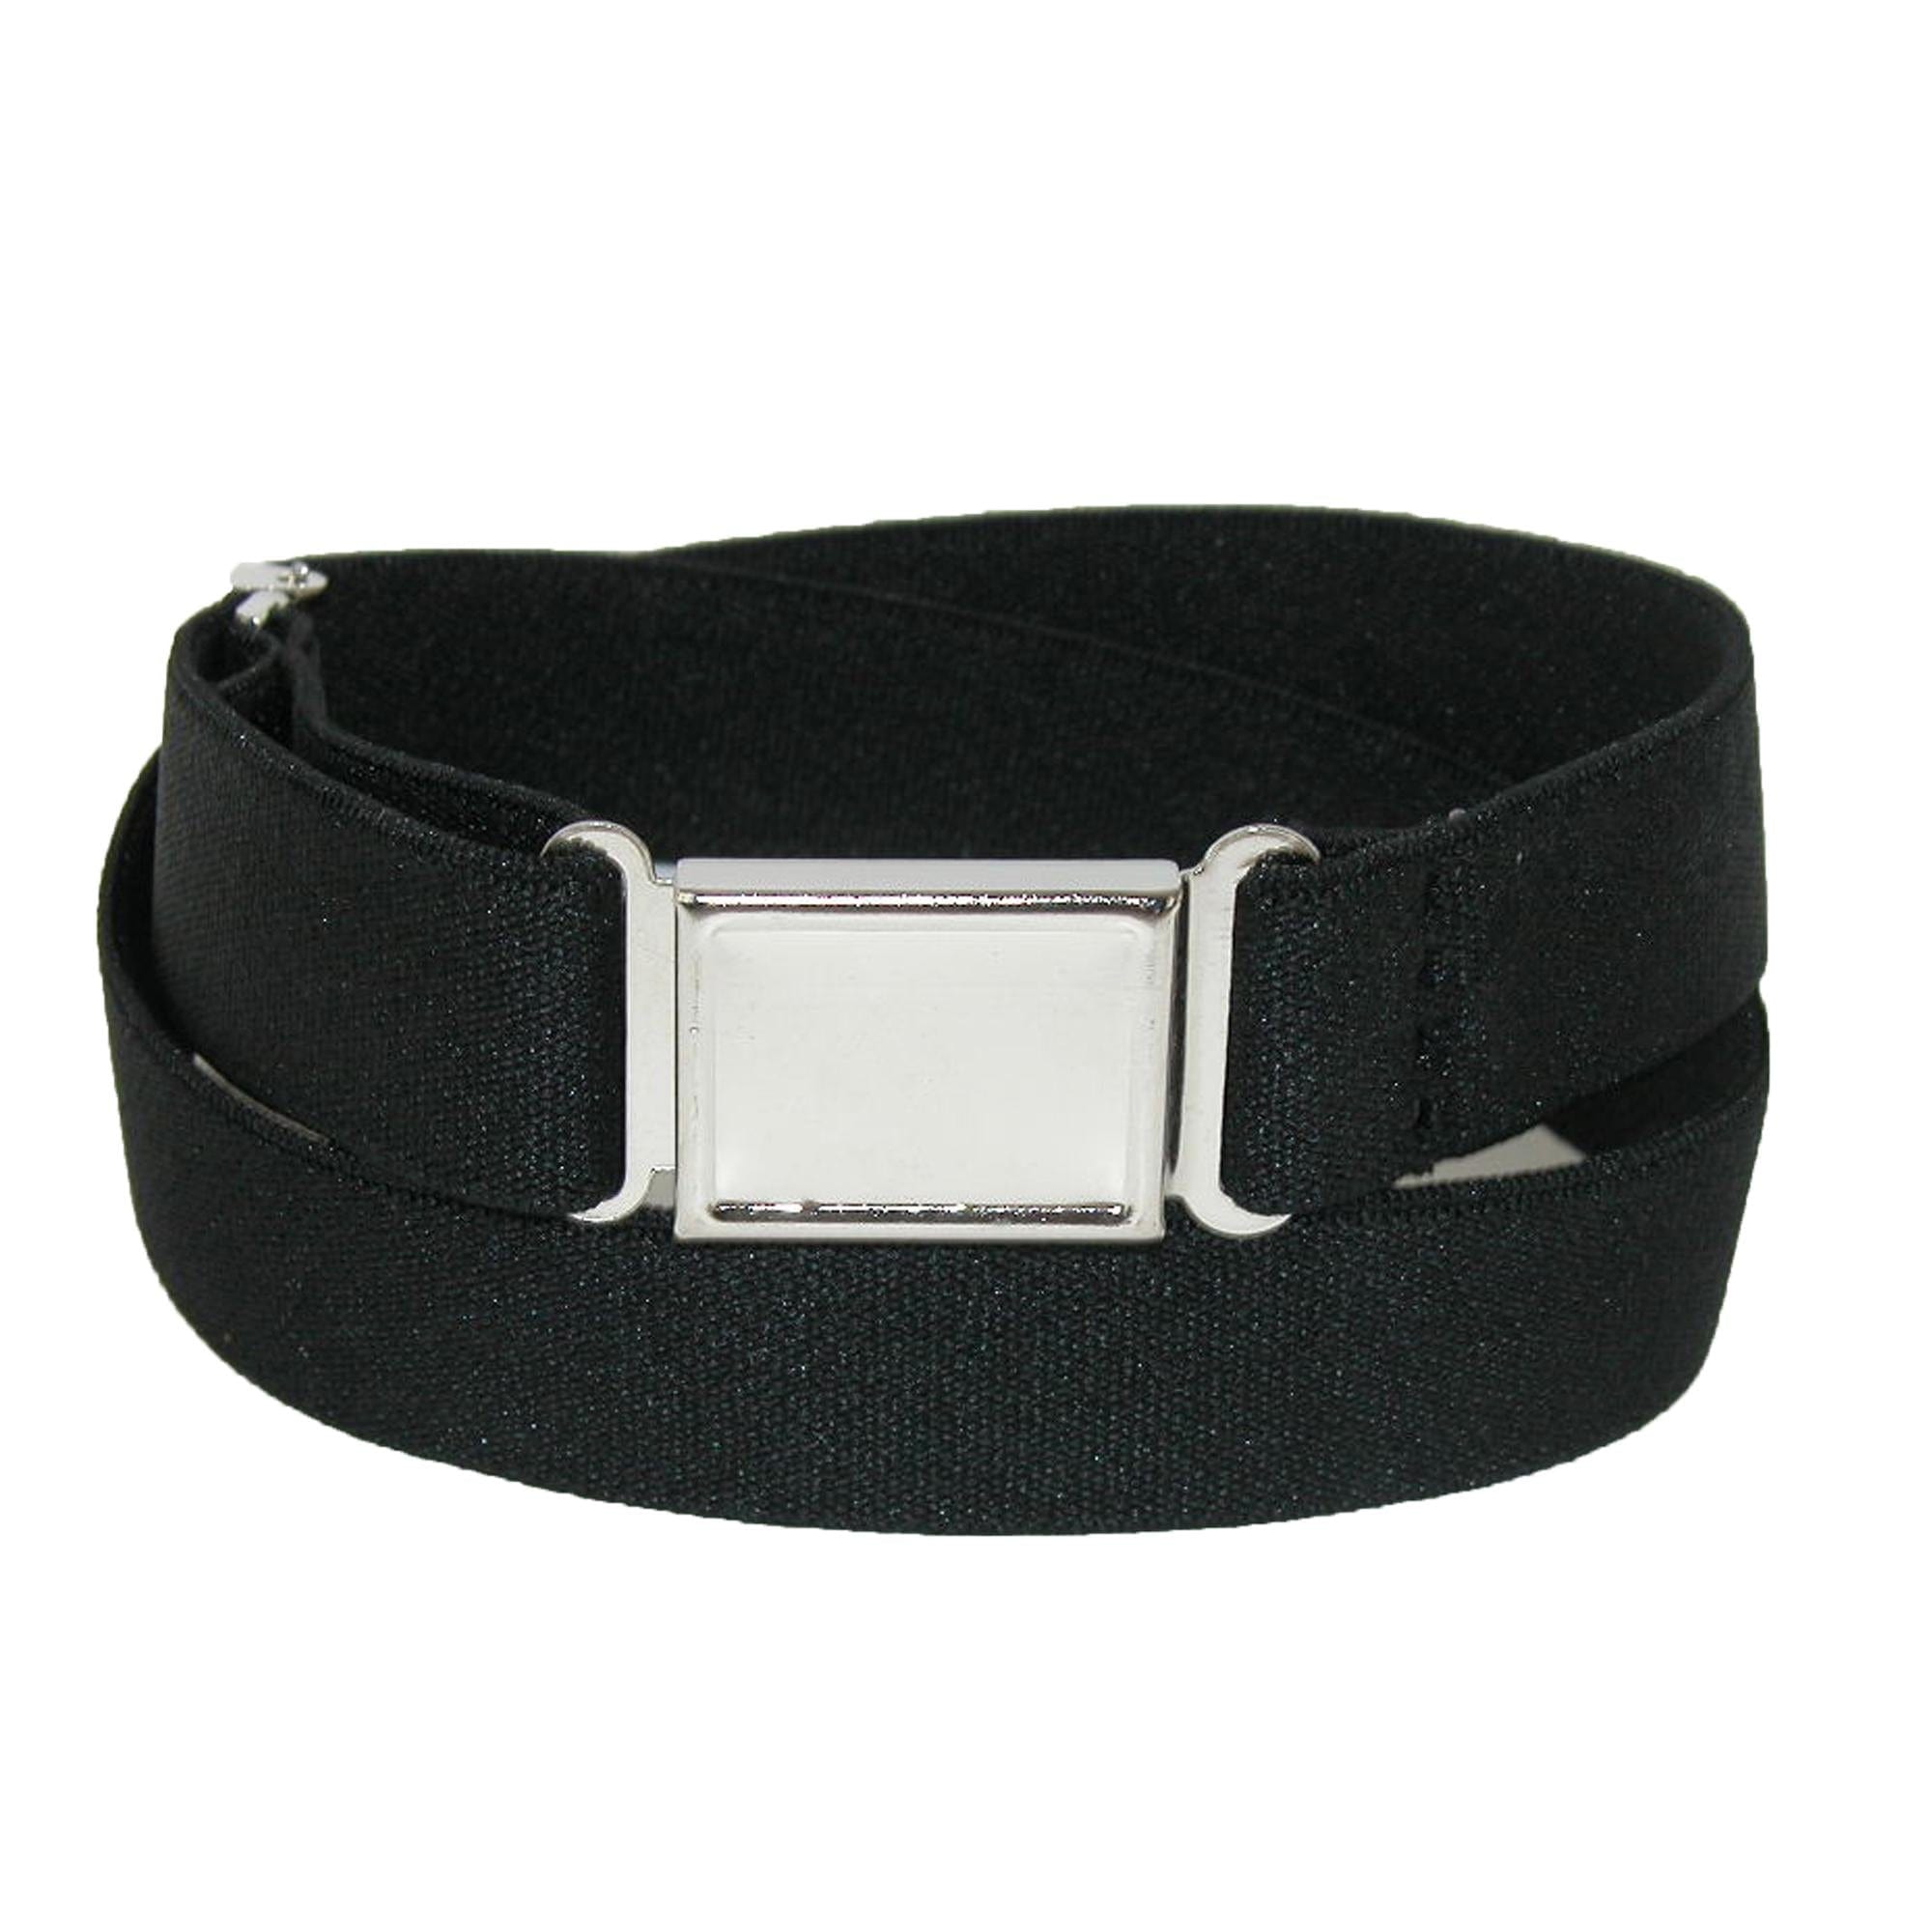 CTM Cotton Adjustable Belt with Nickel Buckle, Black